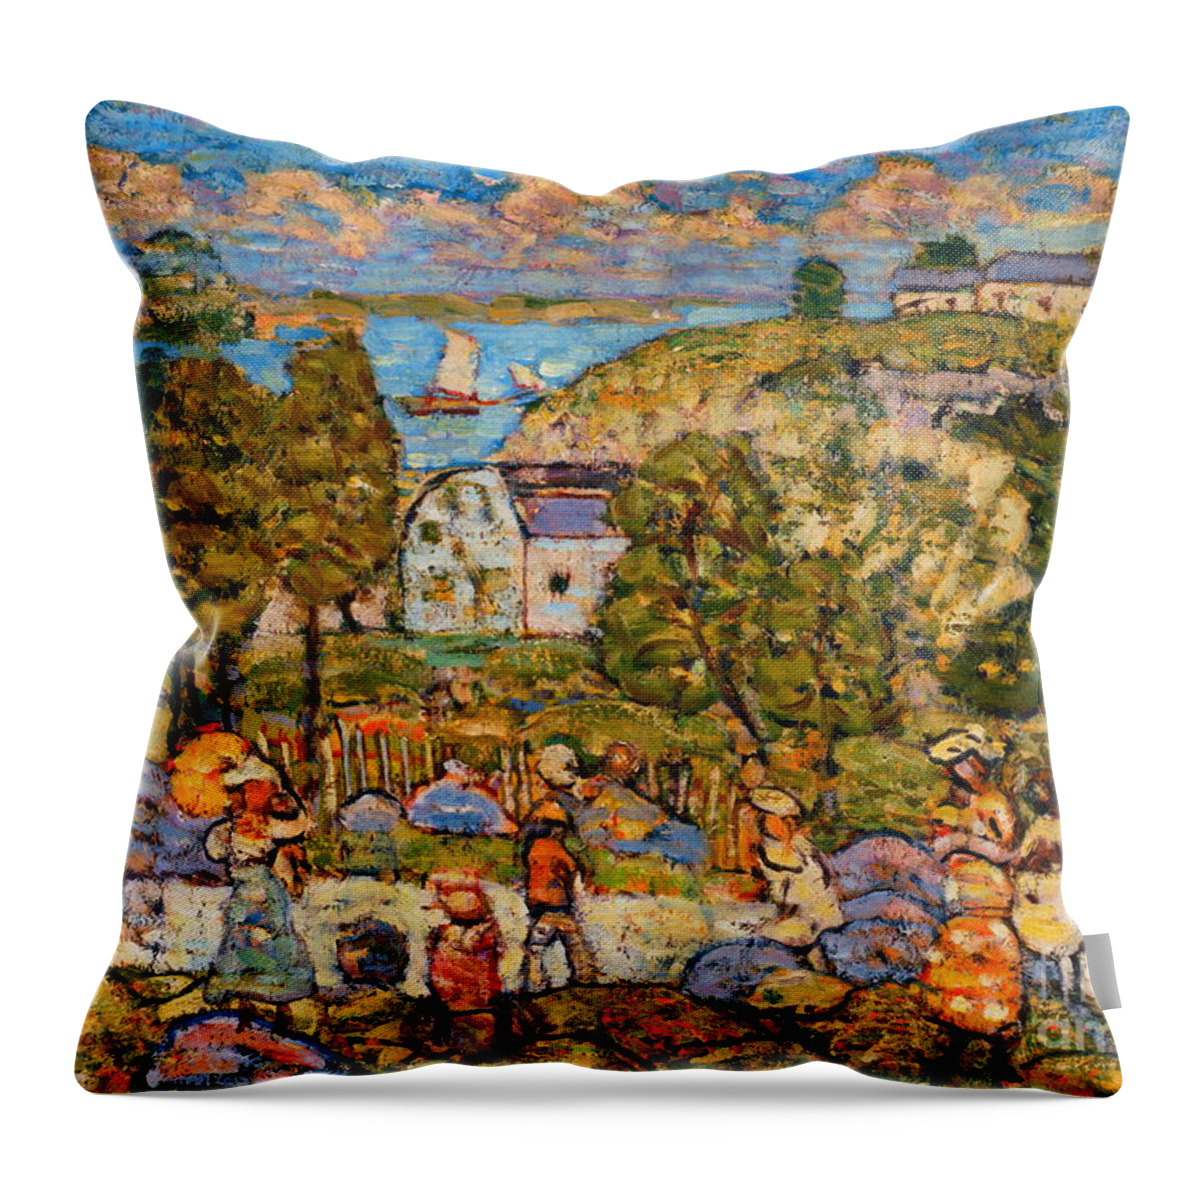 Landscape Near Nahant Throw Pillow featuring the painting Landscape Near Nahant #4 by Maurice Prendergast